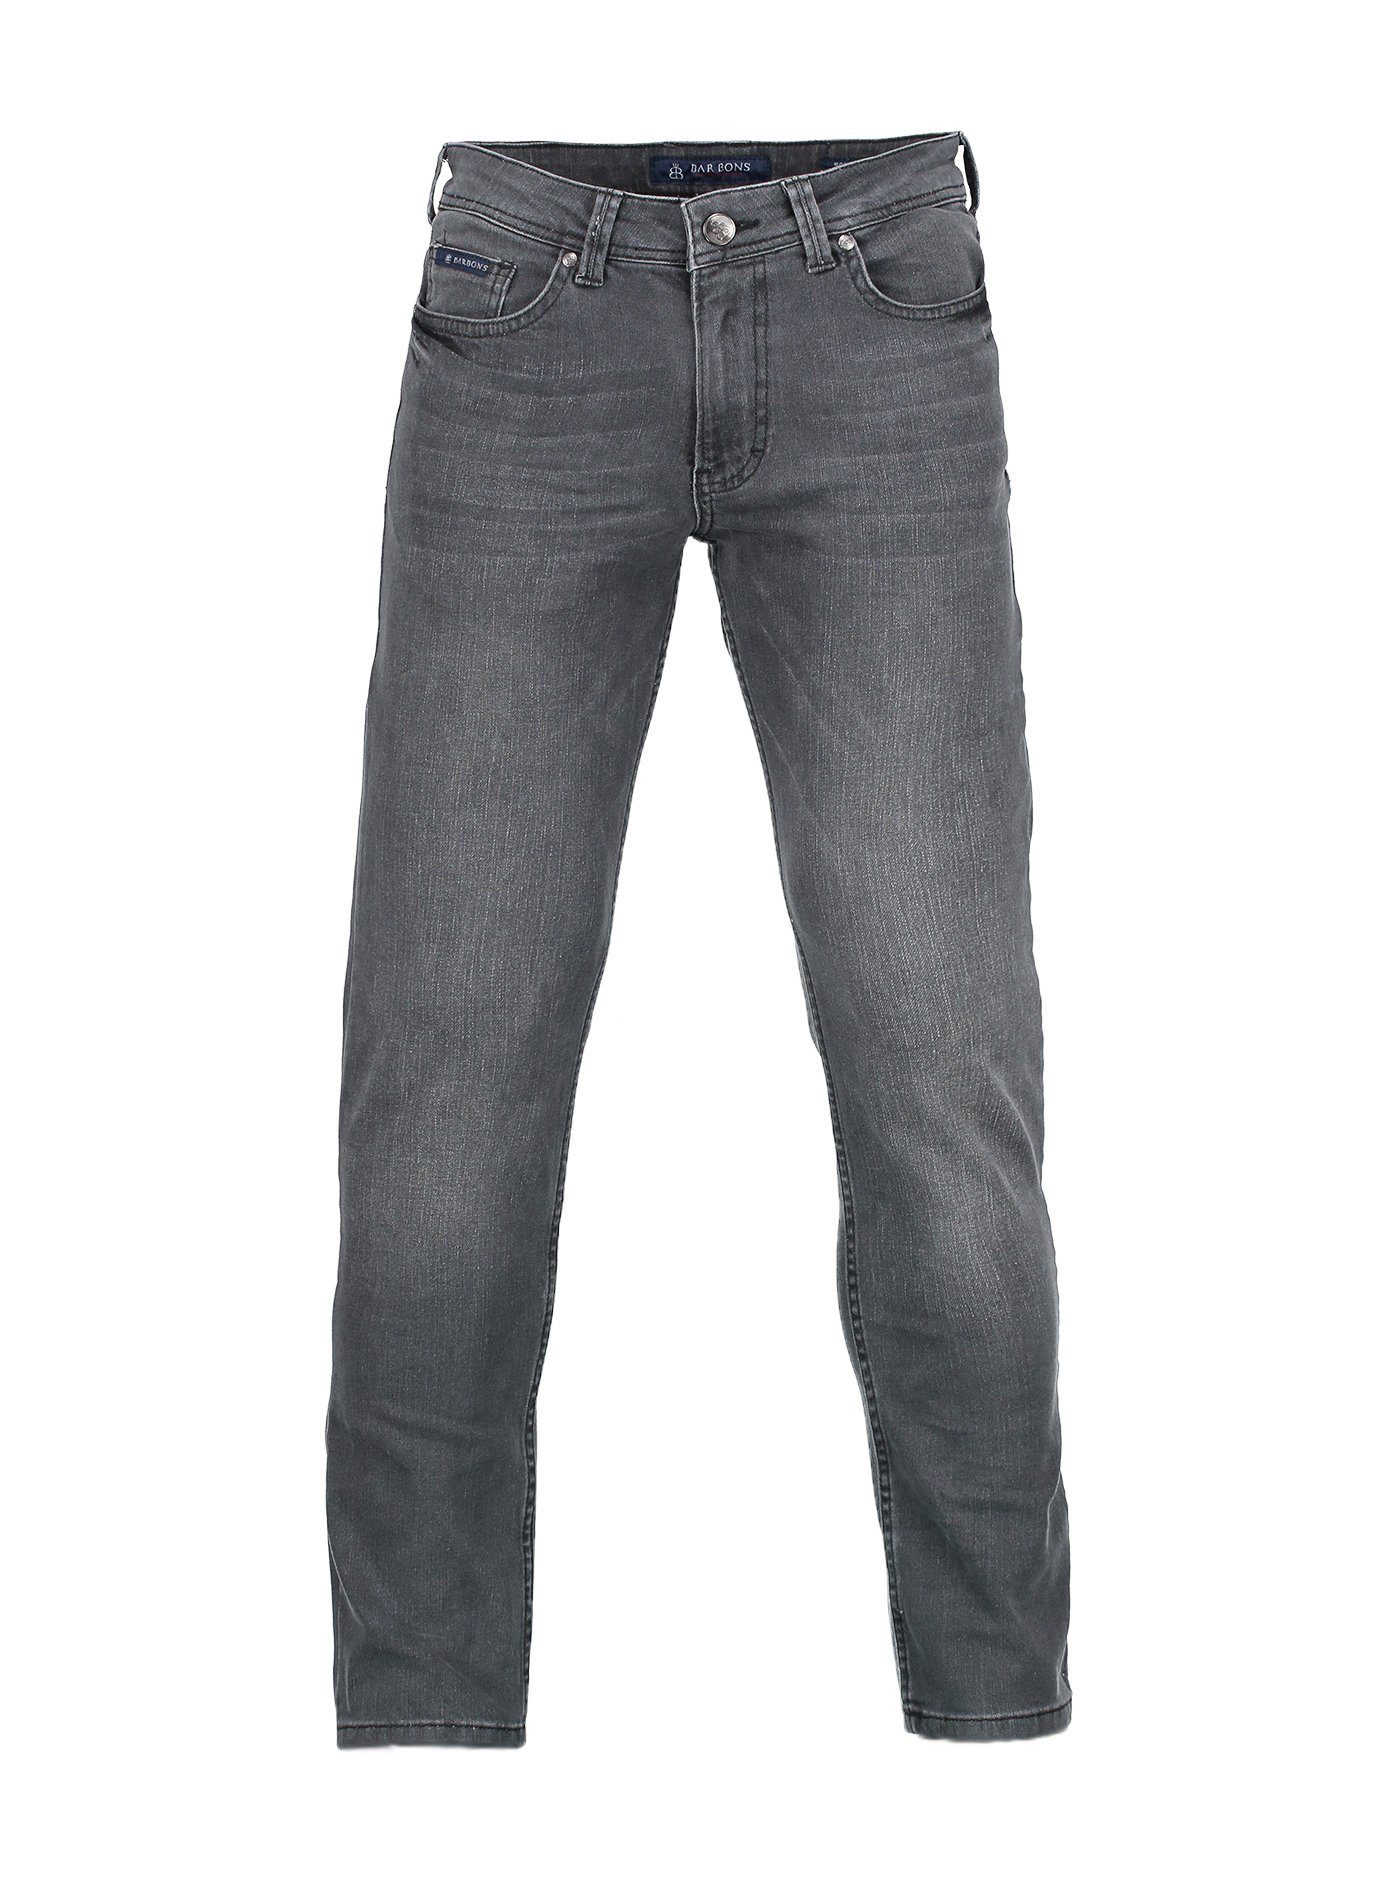 BARBONS 5-Pocket-Jeans Herren Regular Fit 5-Pocket Design 04-Grau